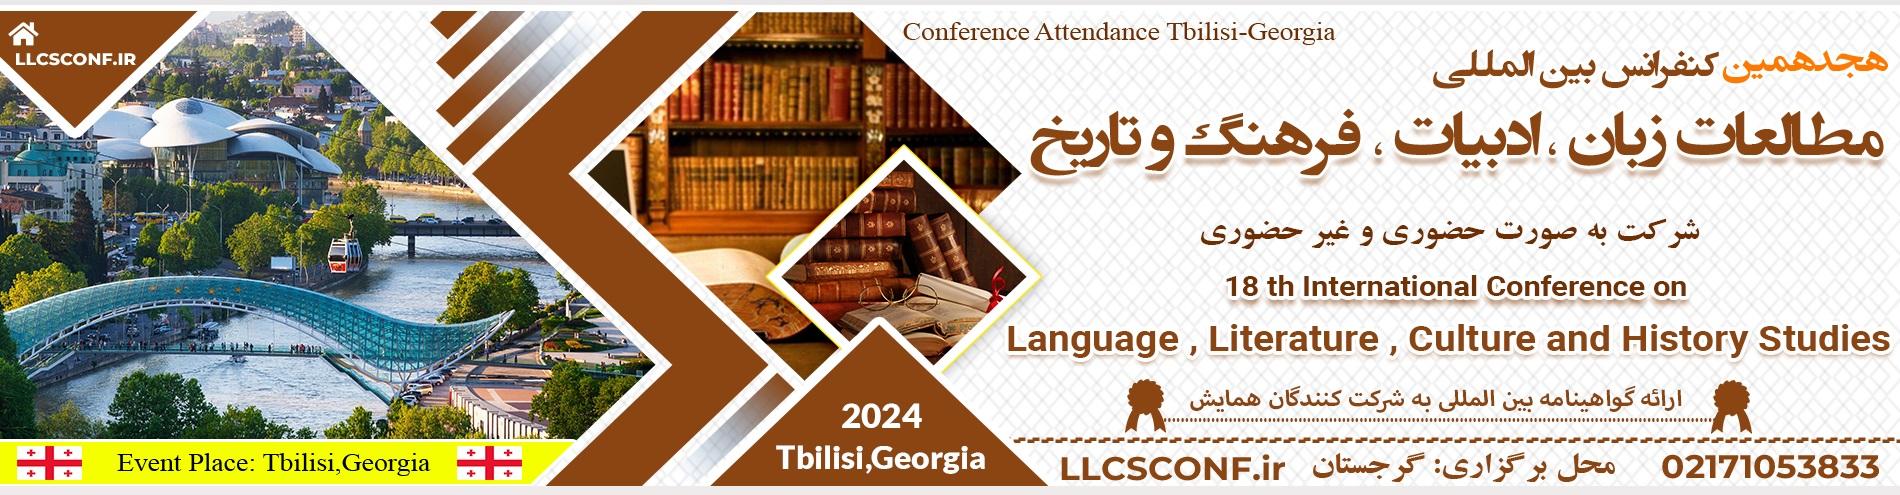 کنفرانس بین المللی مطالعات زبان ، ادبیات، فرهنگ و تاریخ	